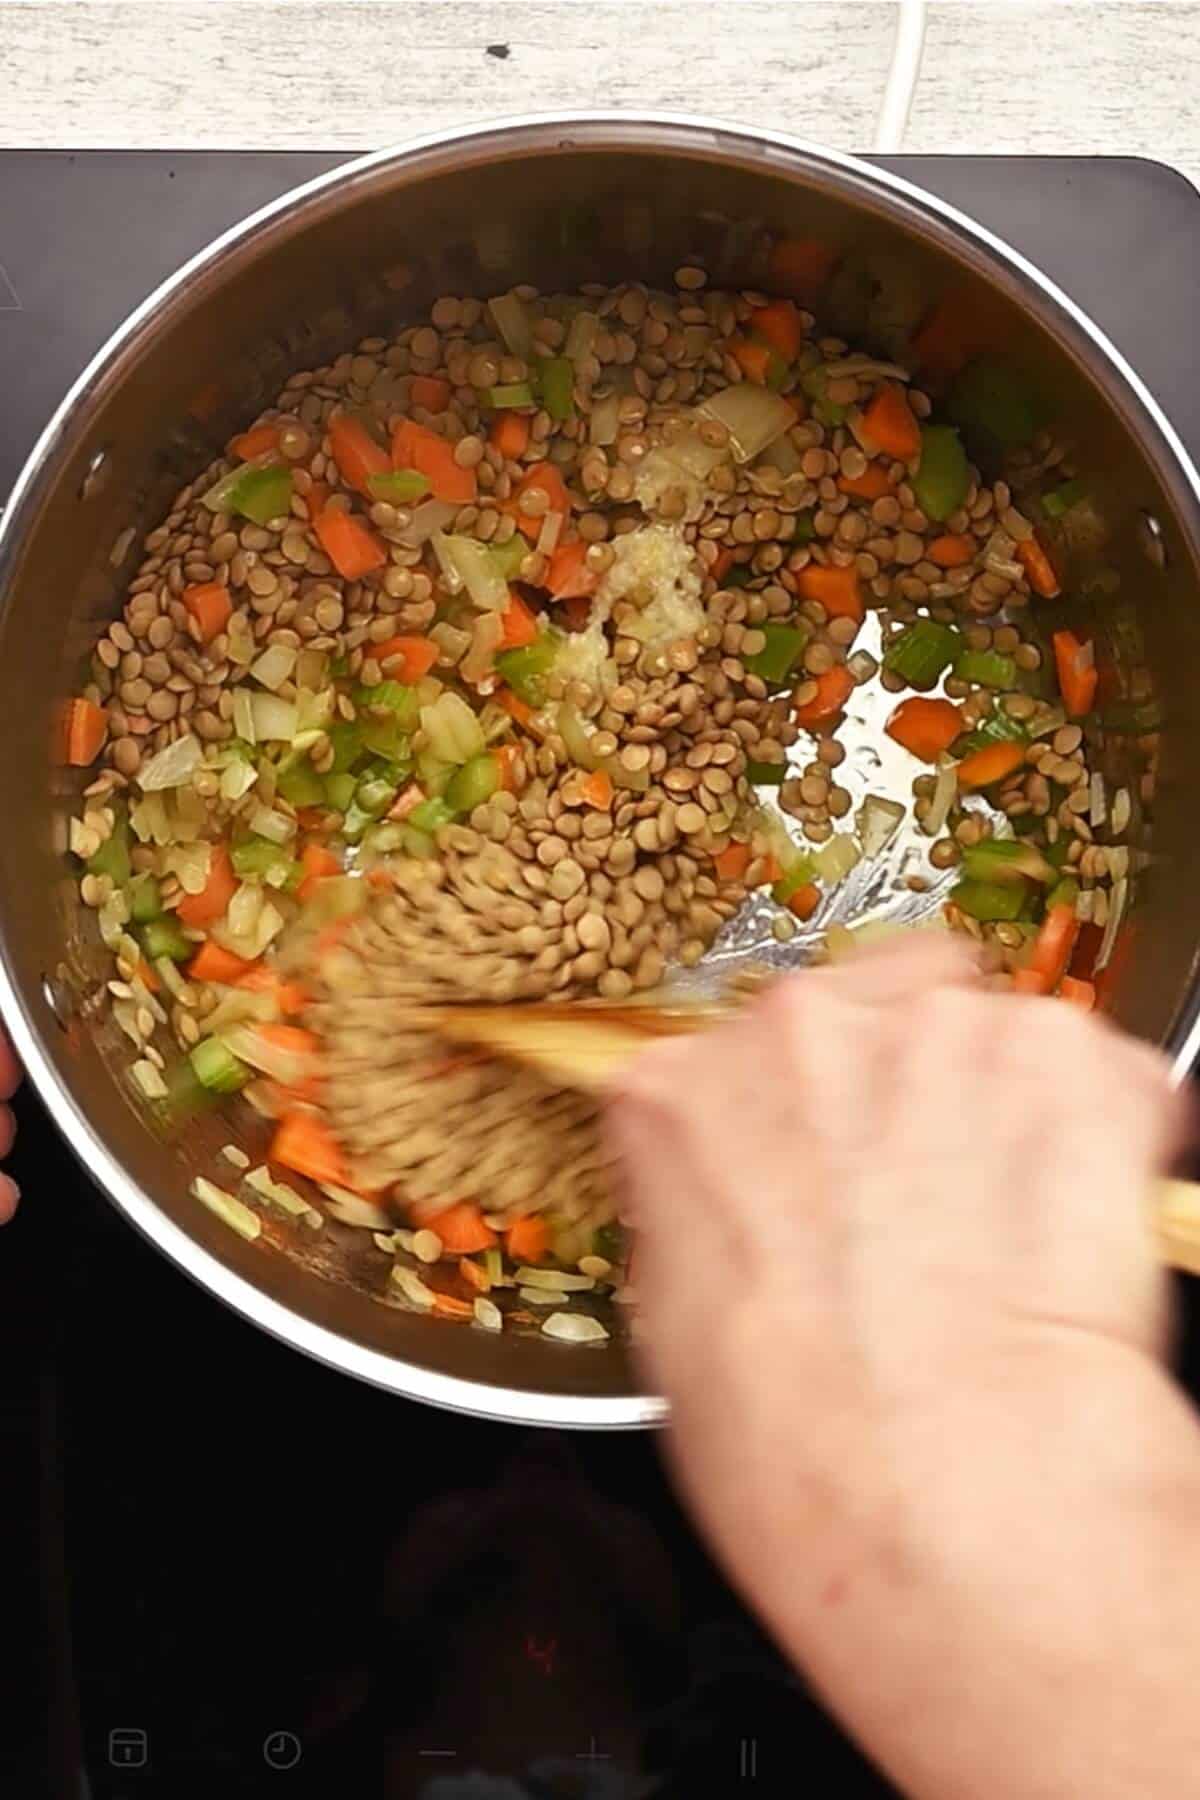 sautéing carrots, onion, celery and lentils in a large soup pot